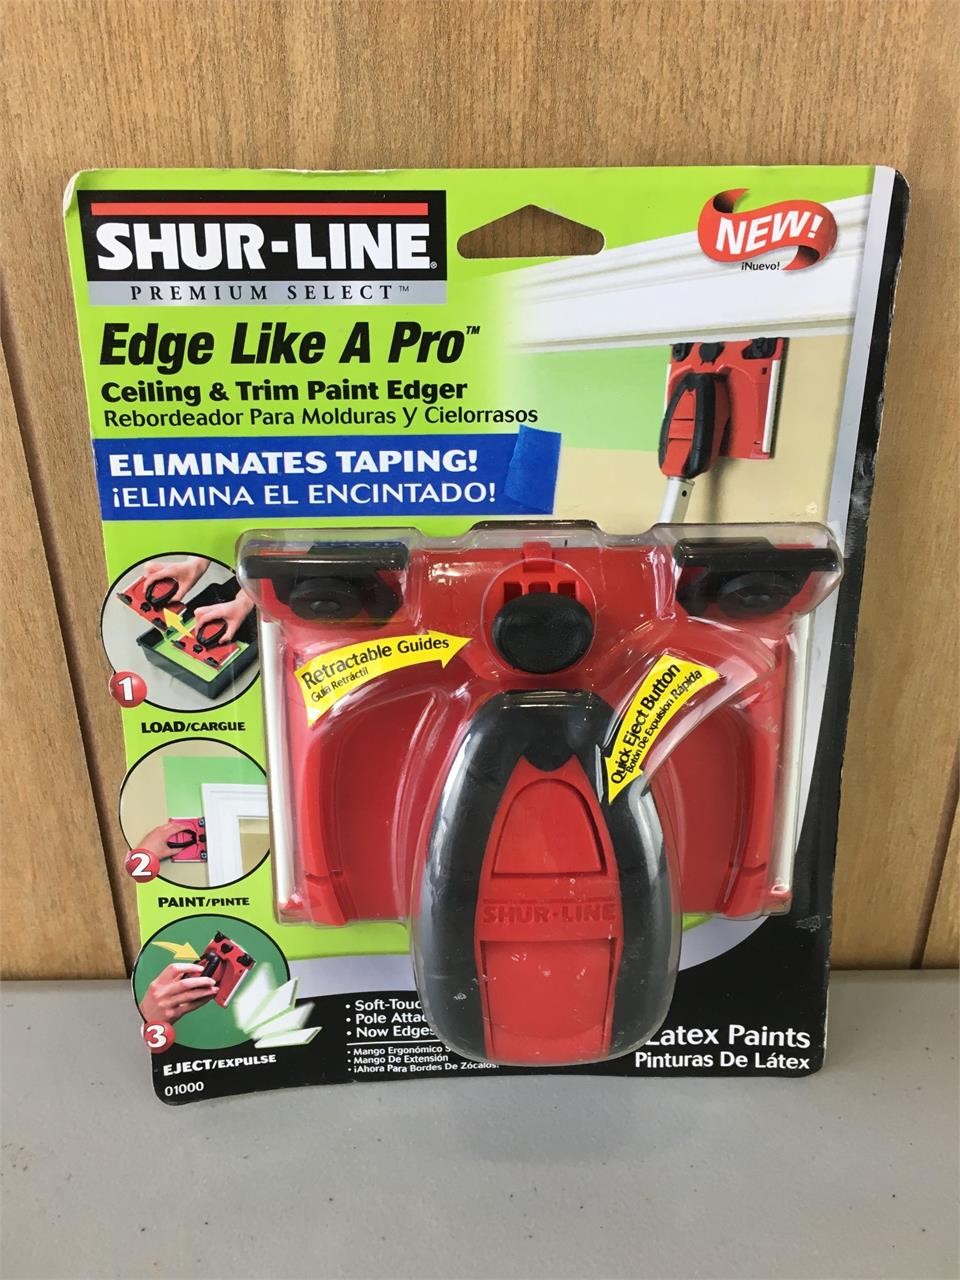 Shur-Line Ceiling & Trim Paint Edger